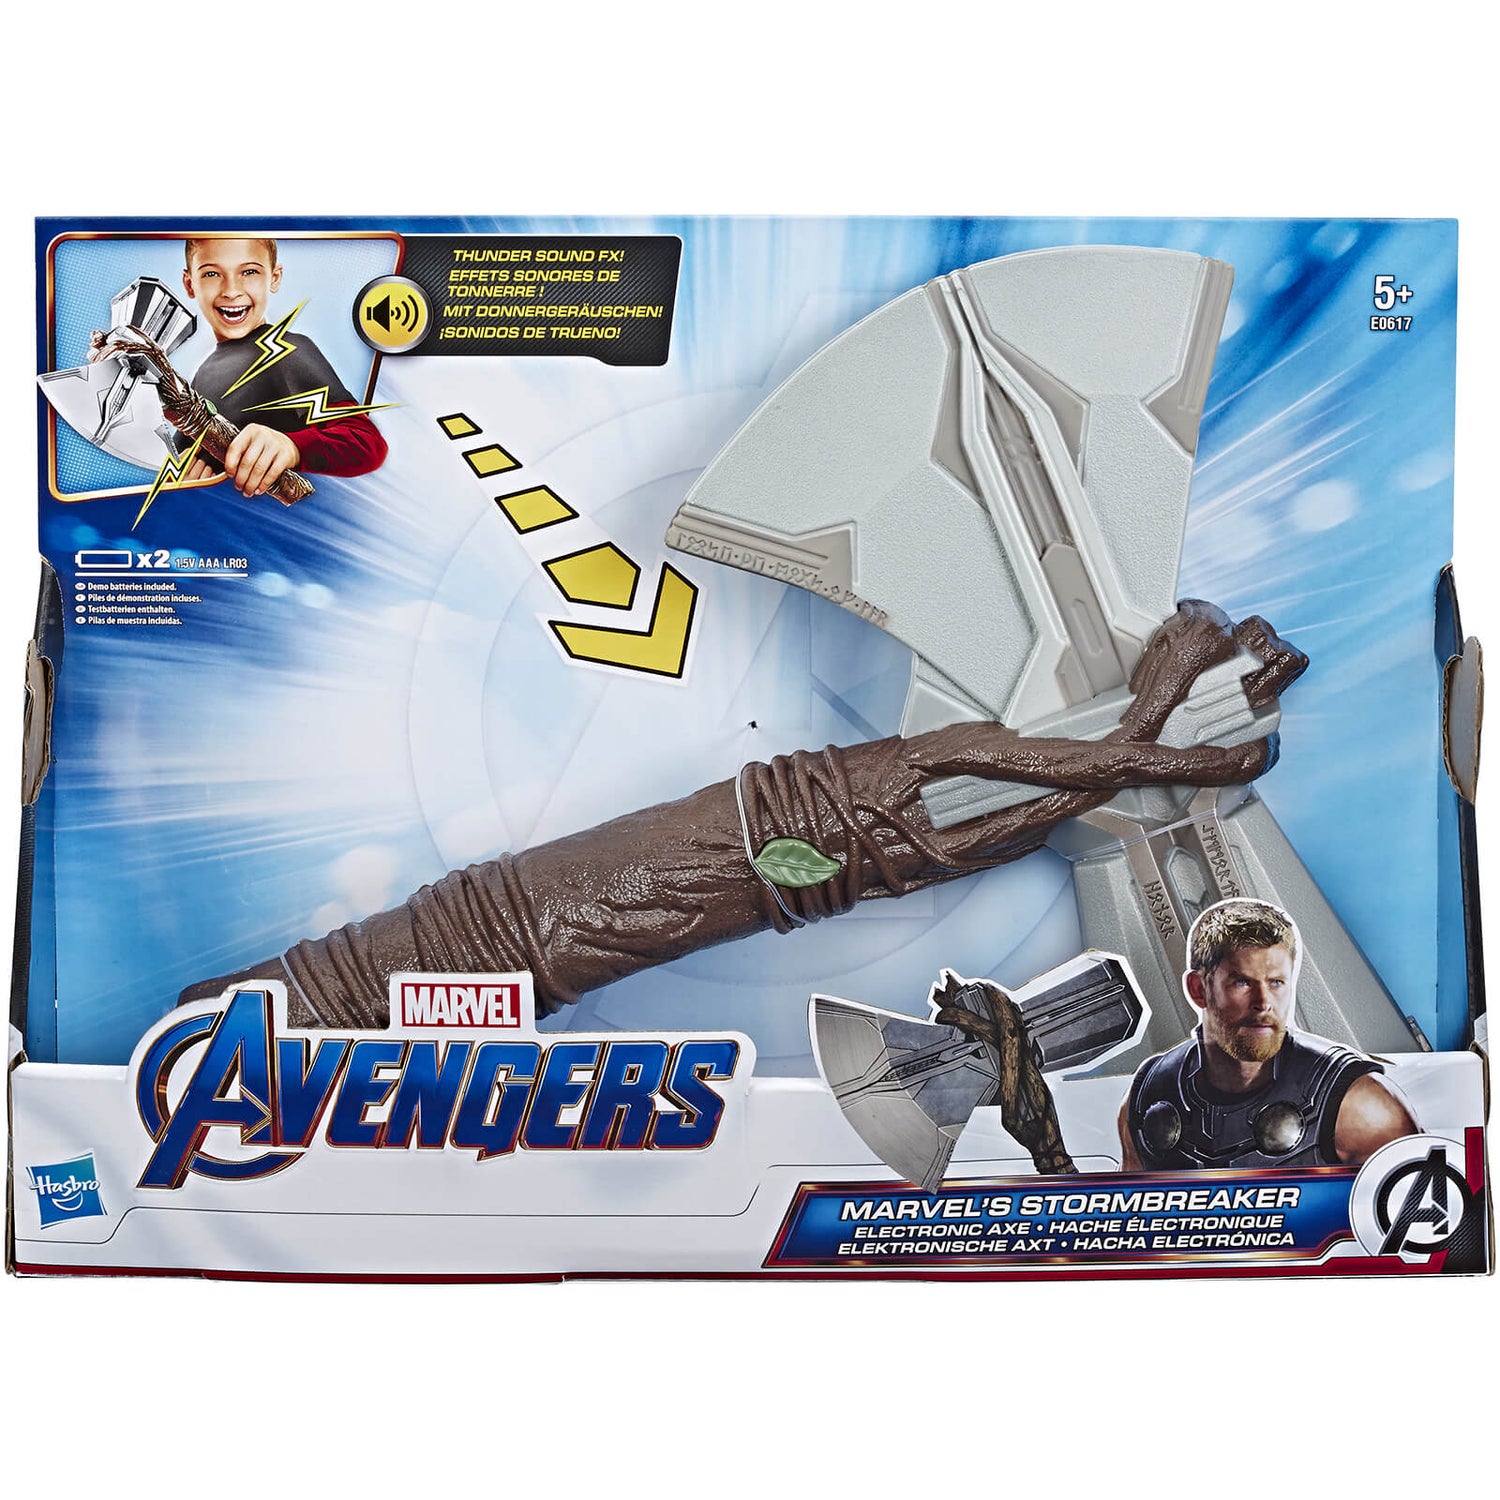 Hasbro Marvel Avengers Infinity War - Thor Elektronische Axt Stormbreaker Spielzeug